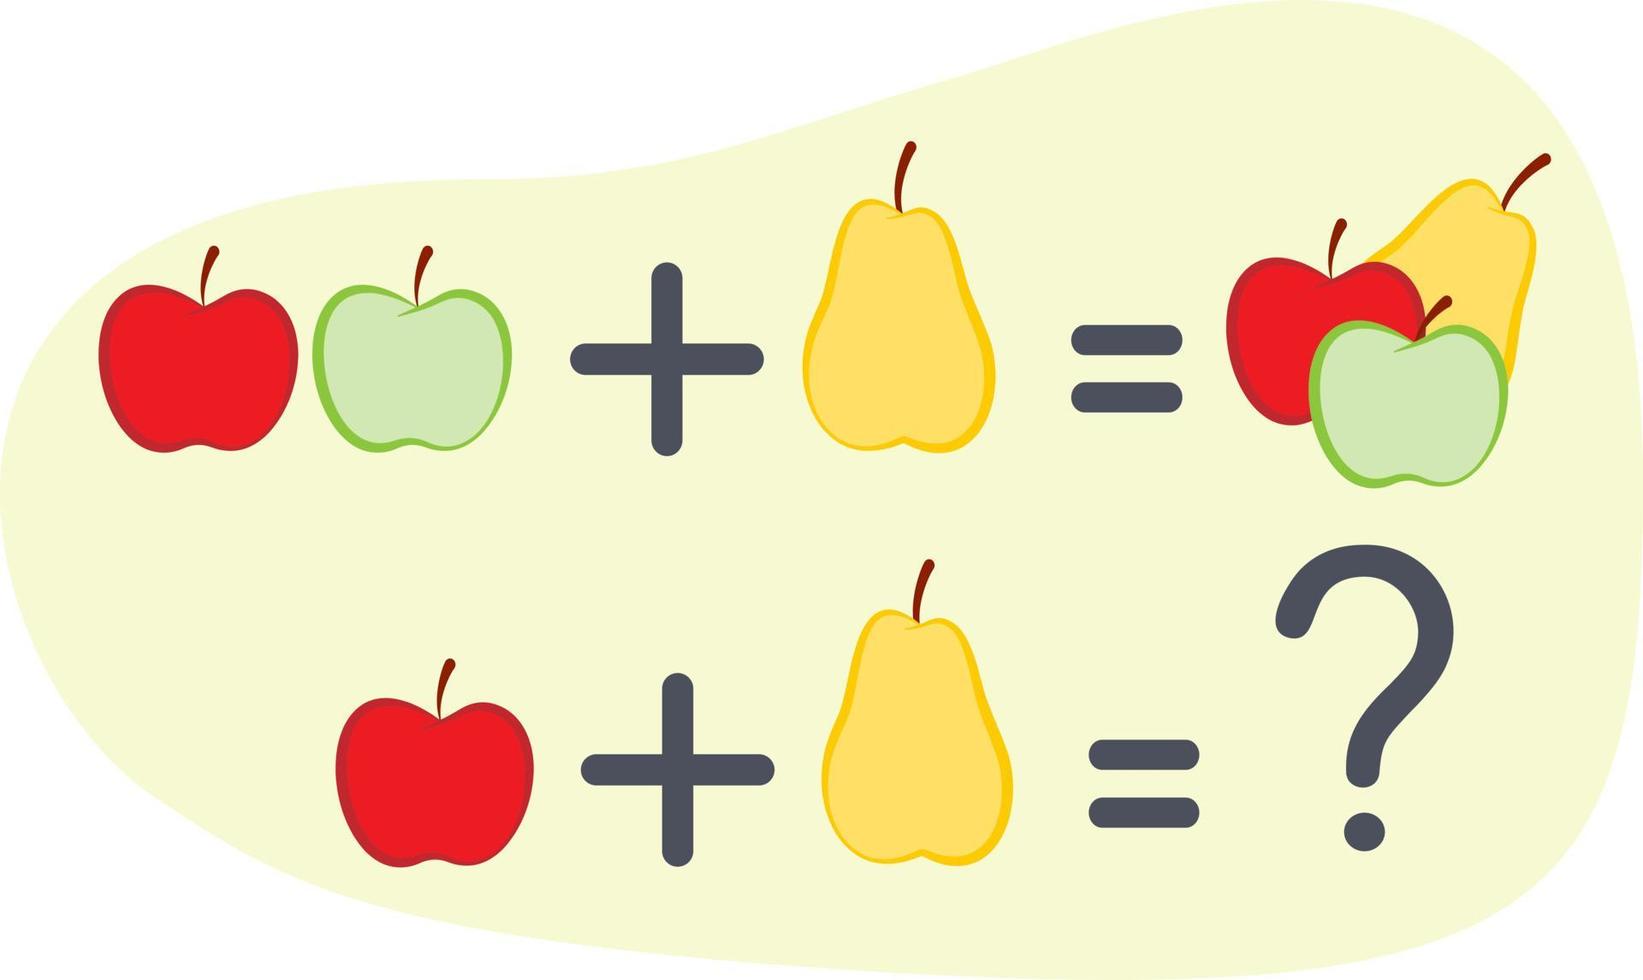 zurück zum schulclipart-elementsatz, äpfel und birnenmatheschulformel vektor